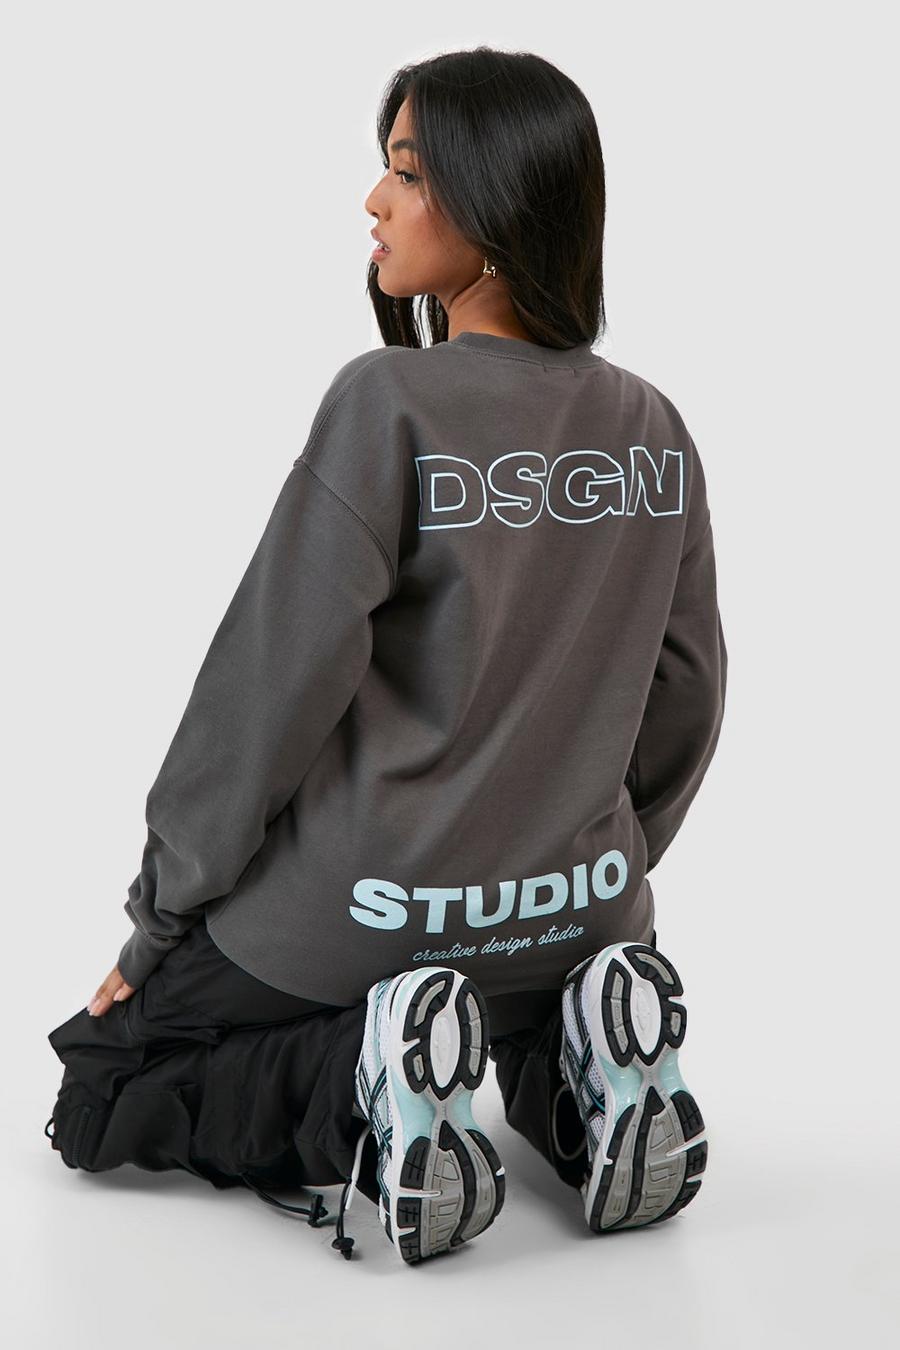 Petite Sweatshirt mit Dsgn Studio Print image number 1